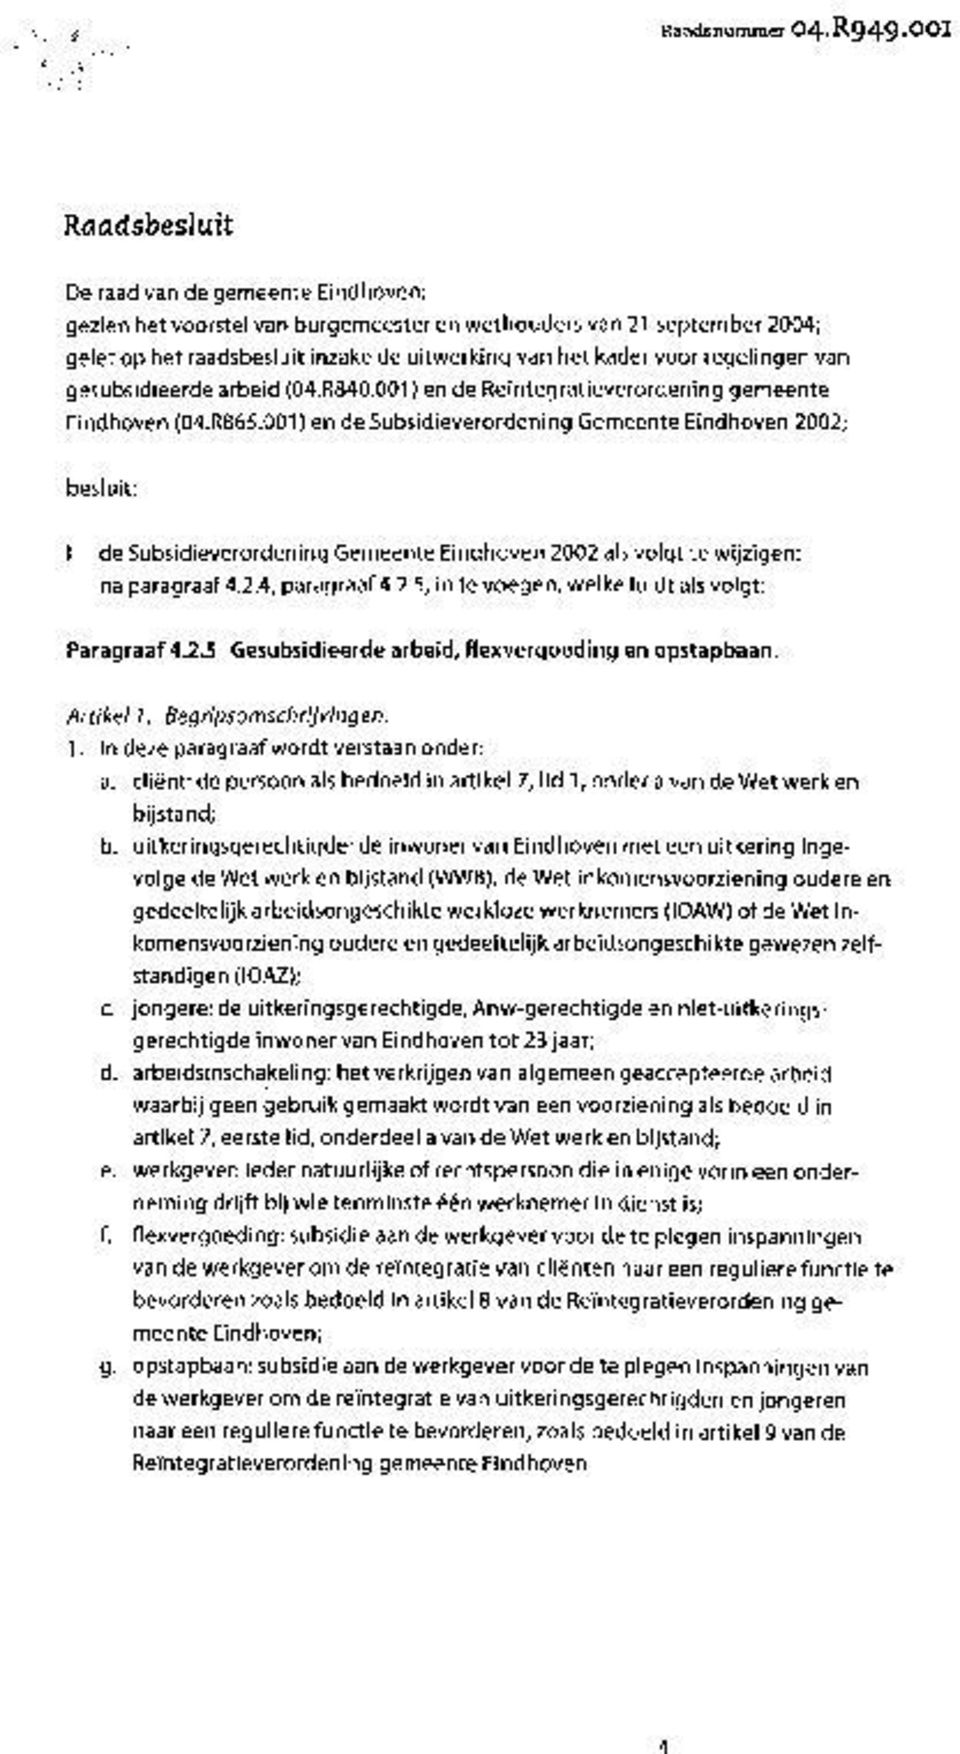 regelingen van gesubsidieerde arbeid (04.R840.001) en de Reintegratieverordening gemeente Eindhoven (04.R865.